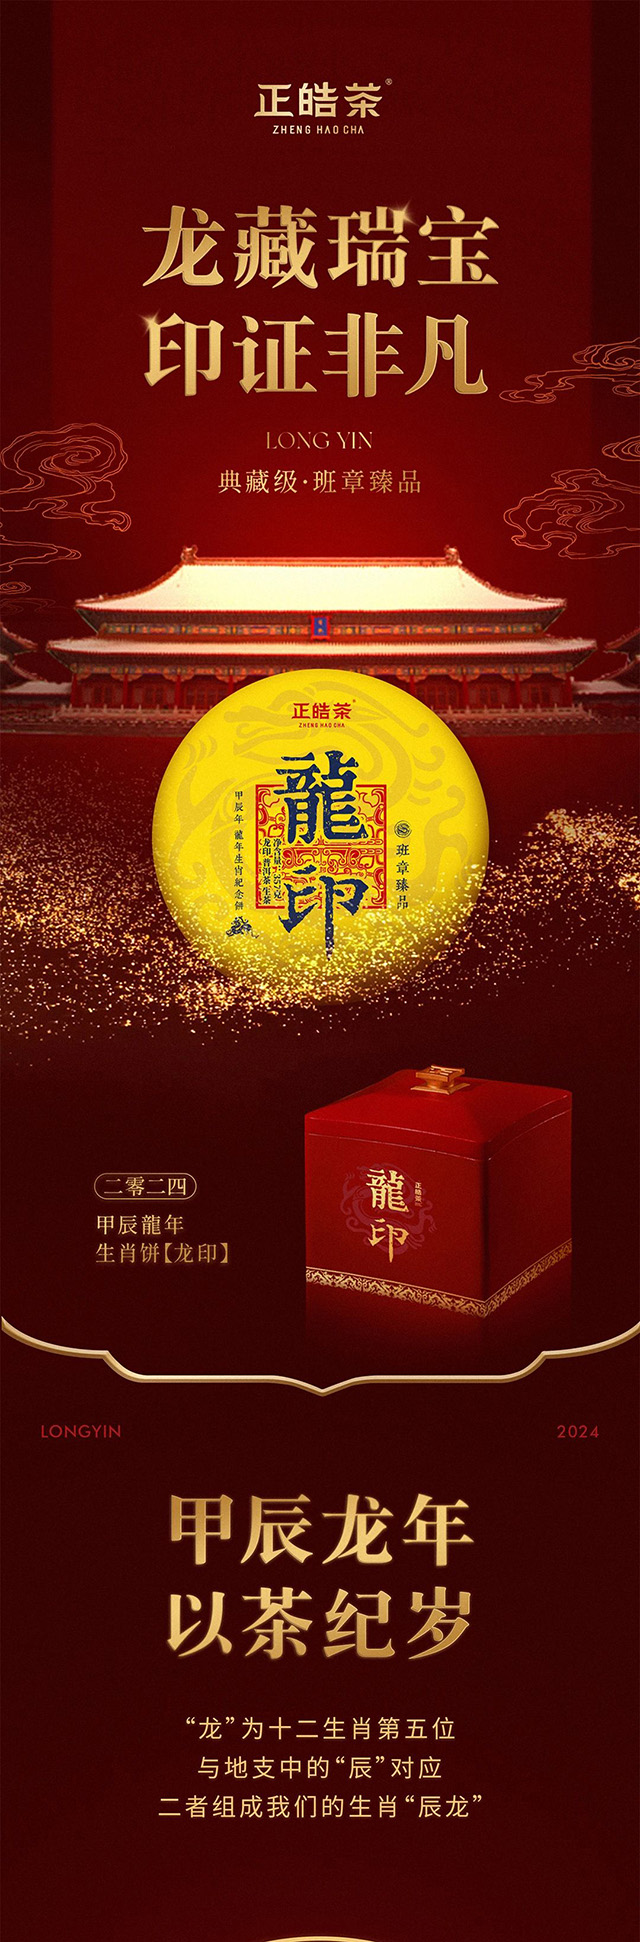 2024正皓生肖纪念茶龙印普洱茶品质特点